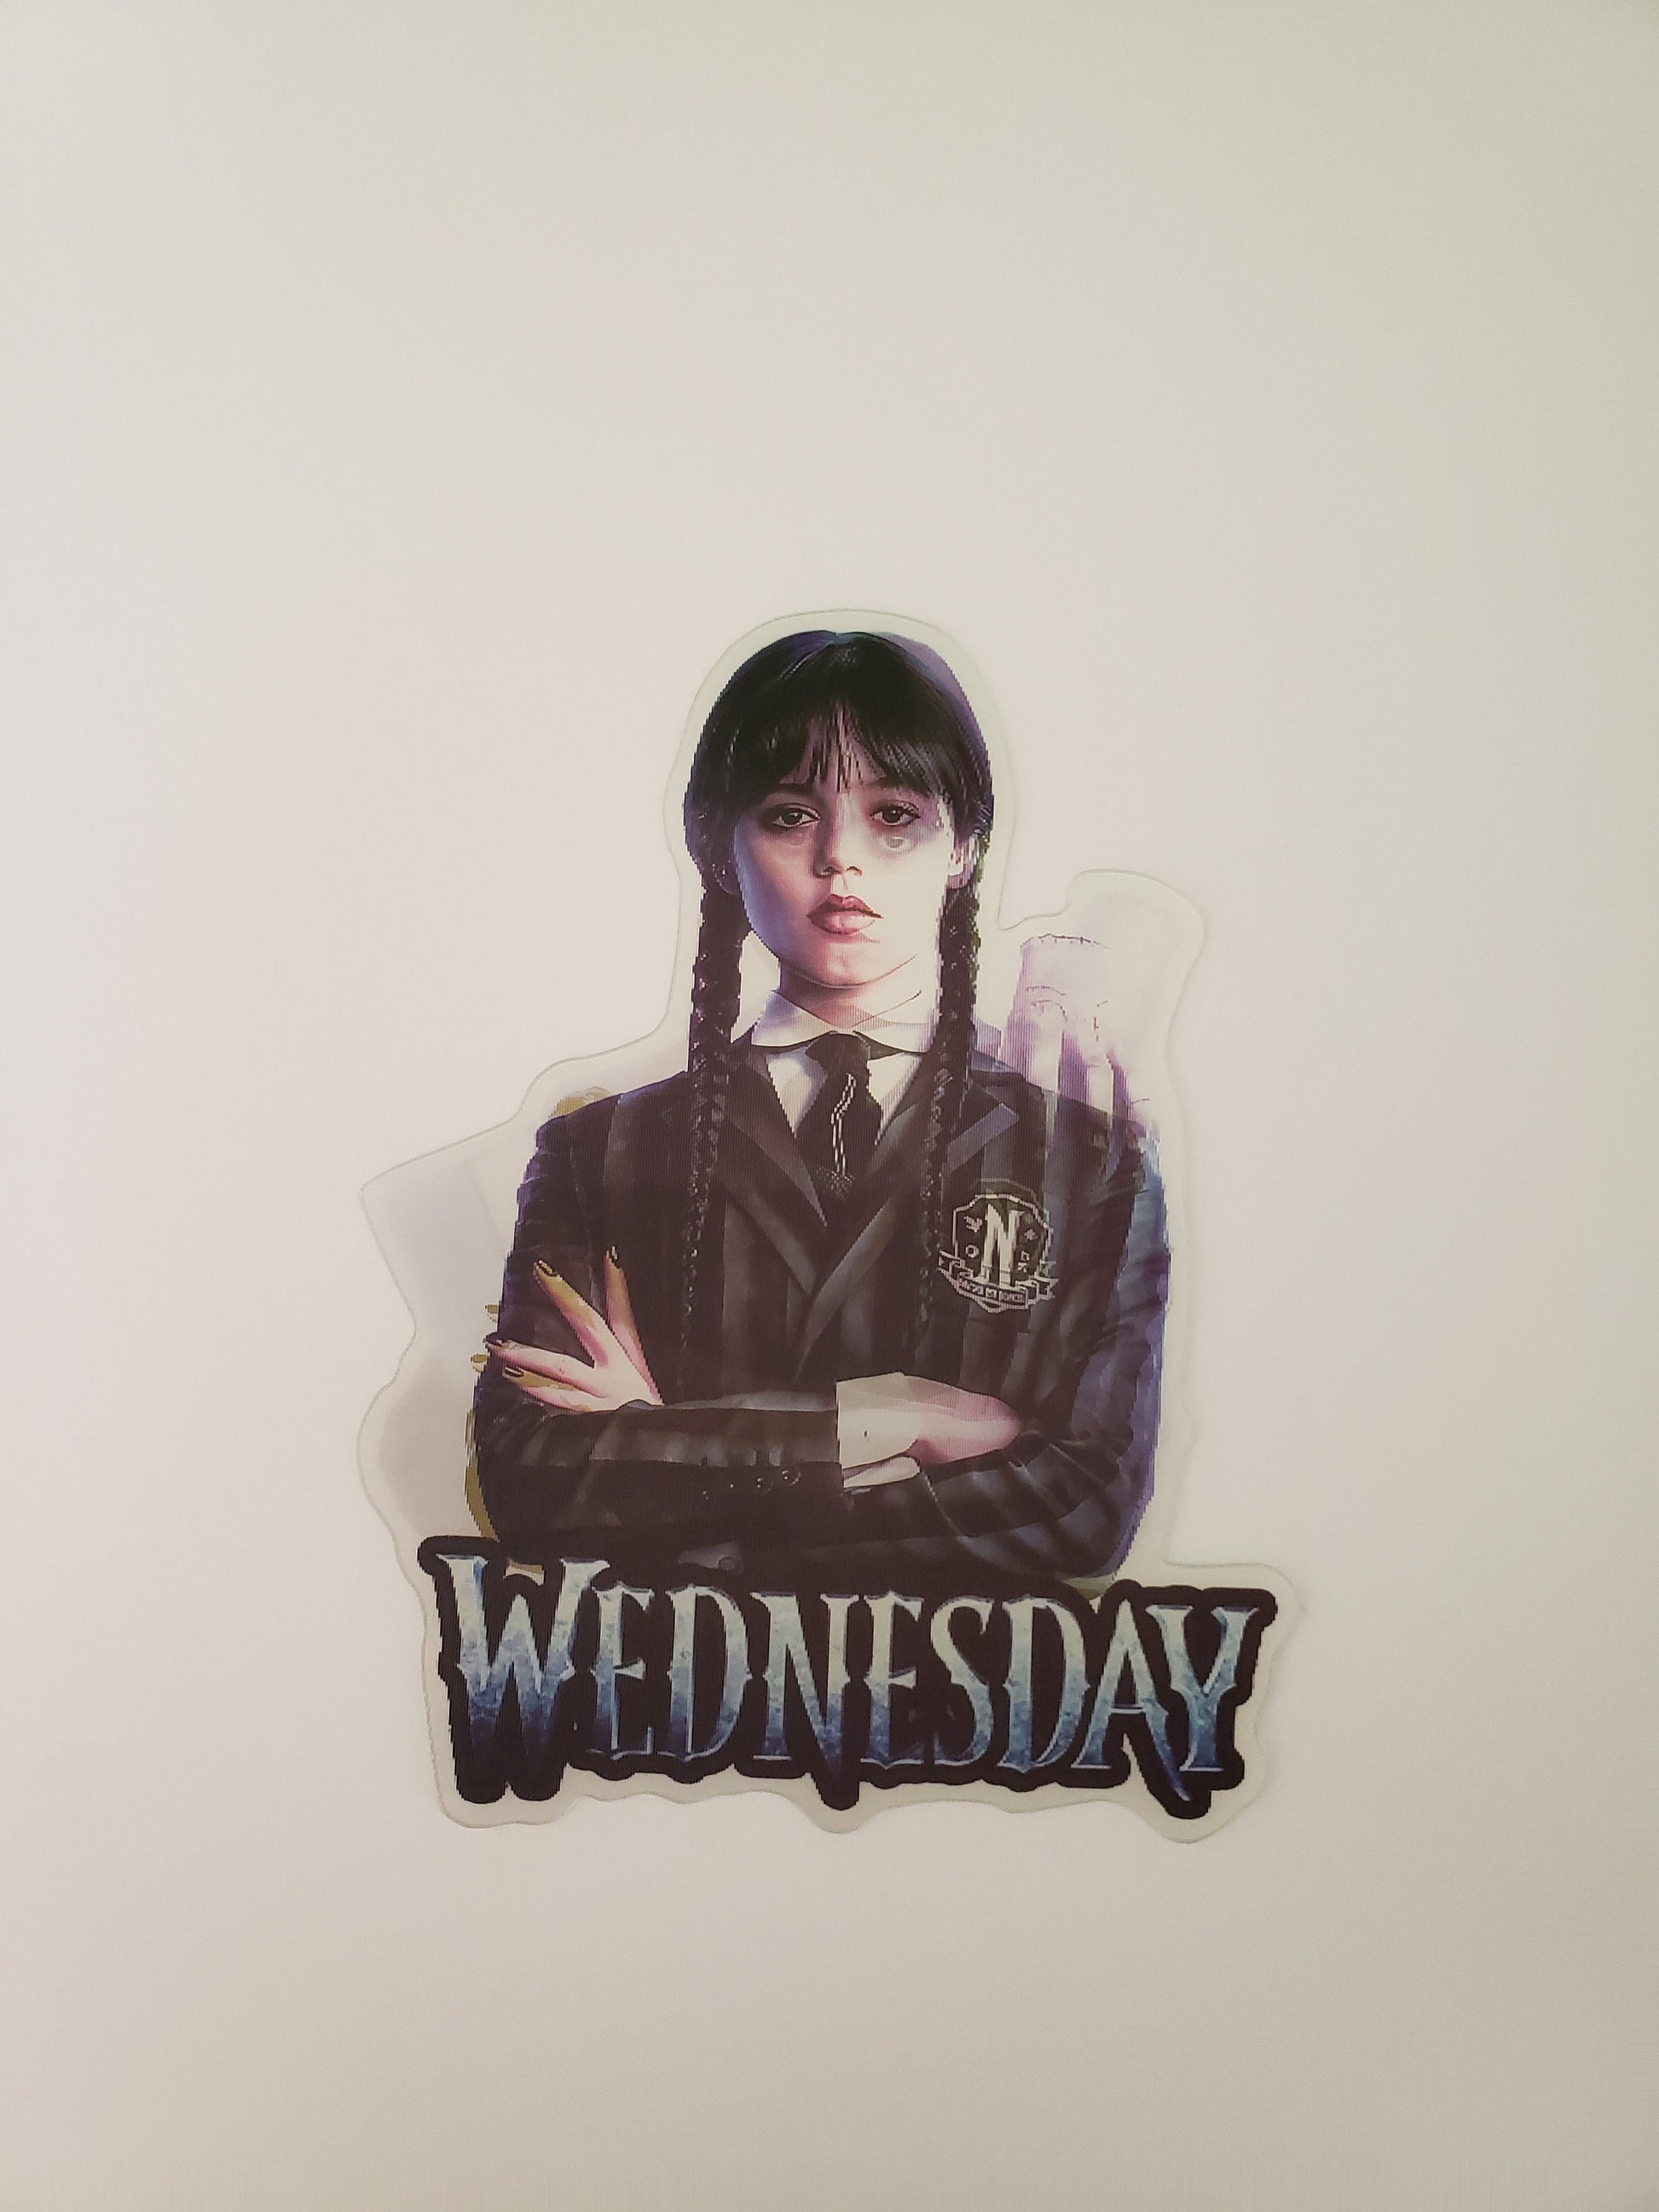 Gothic Weekday, Peeker Sticker, 3D Lenticular Car Sticker, Motion Sticker, TV Show Sticker